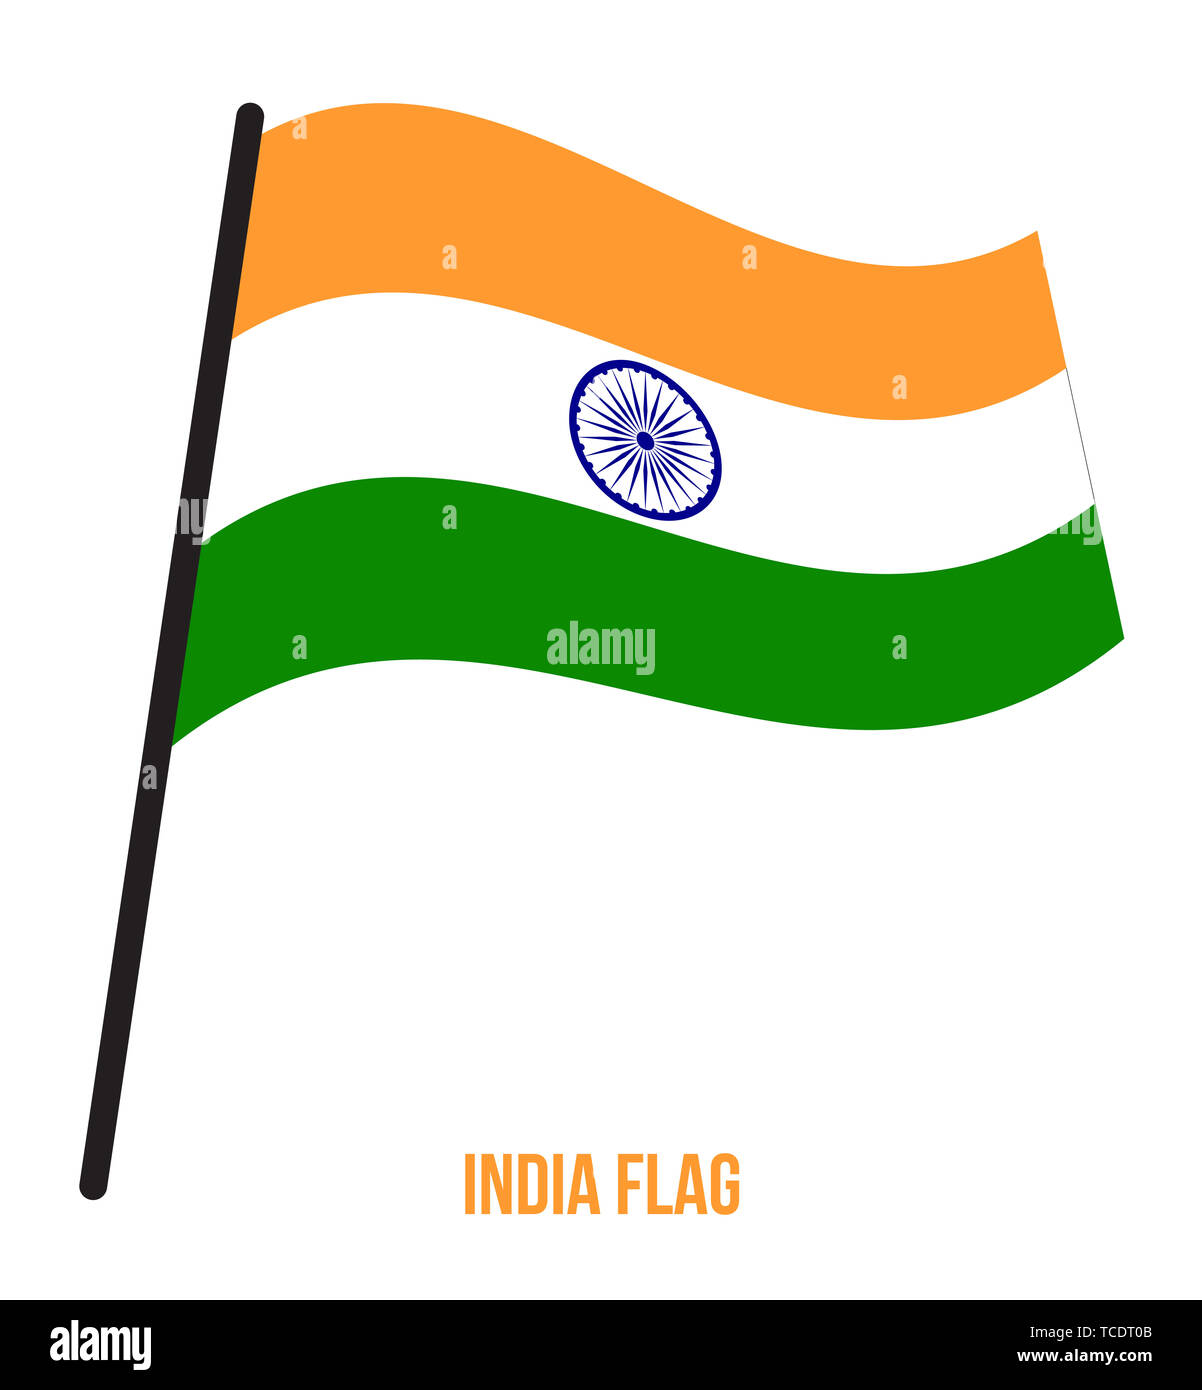 India Flag Waving Vector Illustration on White Background. India National Flag. Stock Photo